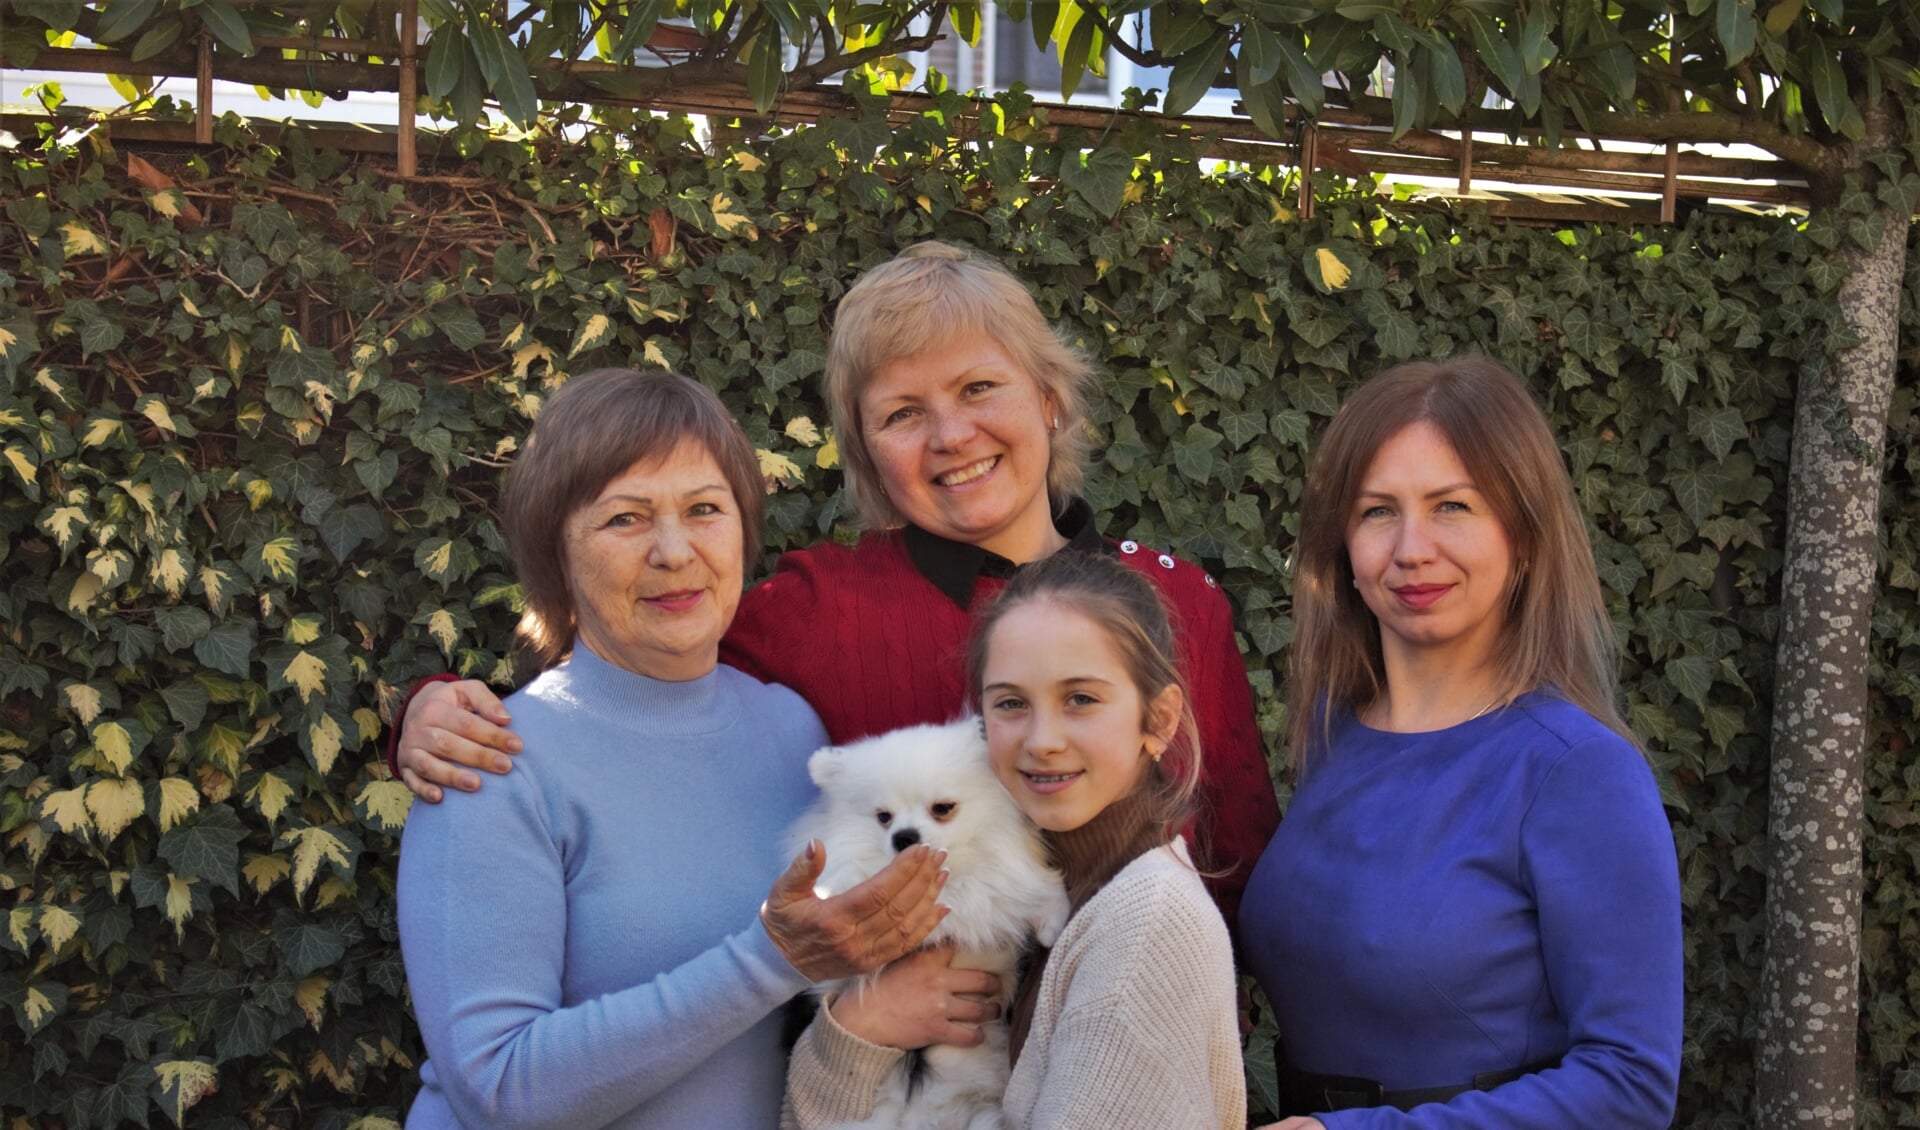 Oksana (midden) heeft haar moeder, zus en nichtje in huis genomen. Zij zijn gevlucht uit Oekraïne toen de oorlog daar uitbrak. In Nederland proberen ze nu ook andere vluchtelingen uit Oekraïne te helpen. 